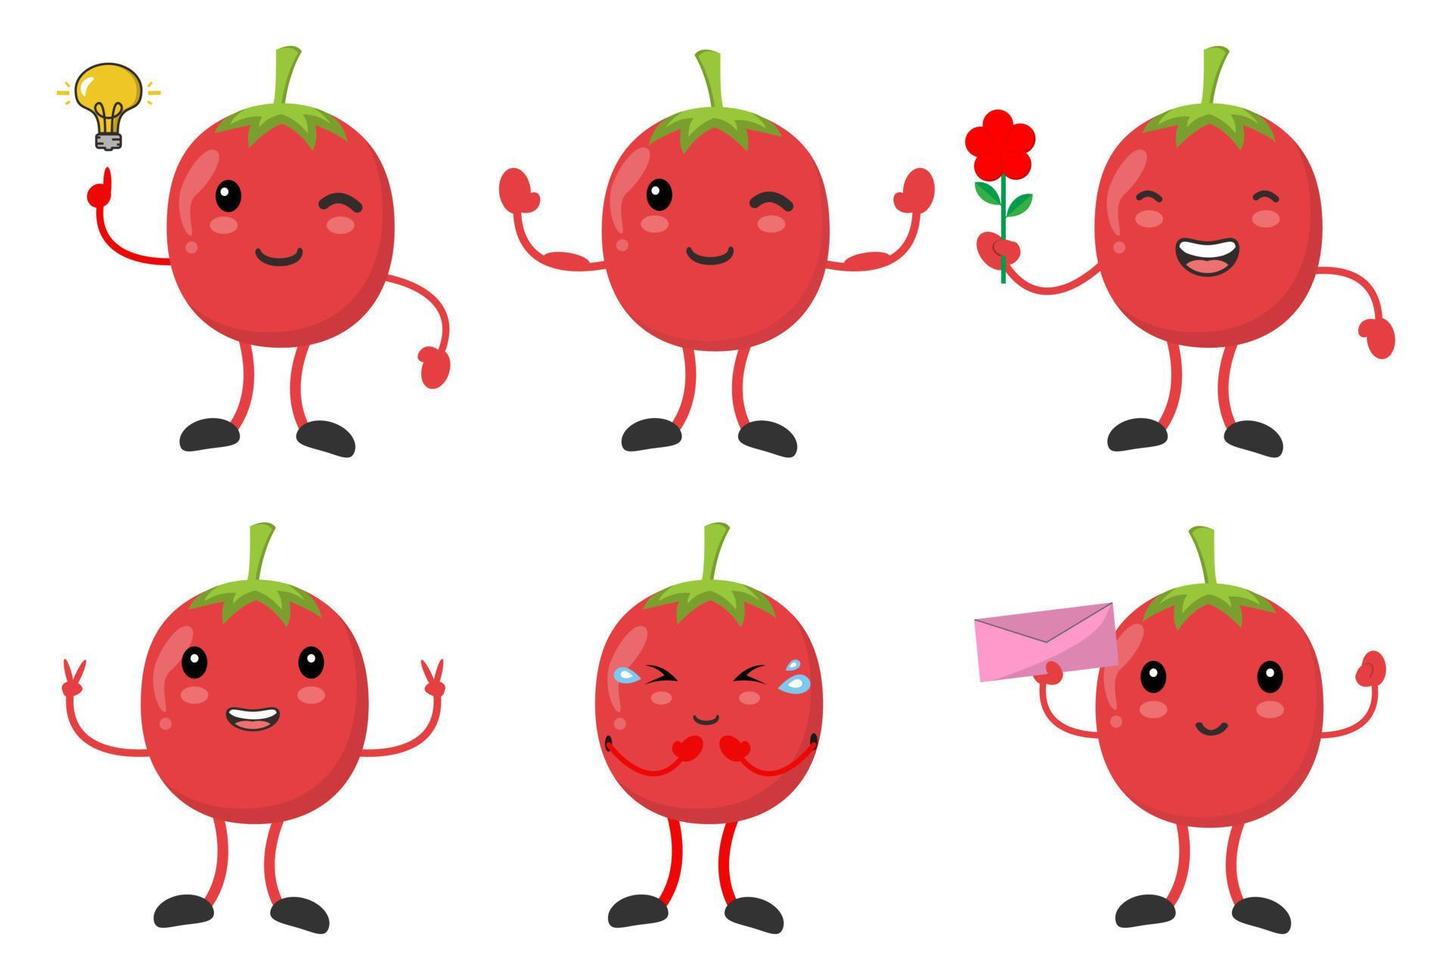 définir la tomate de dessin animé avec diverses émotions pose des images vectorielles vecteur